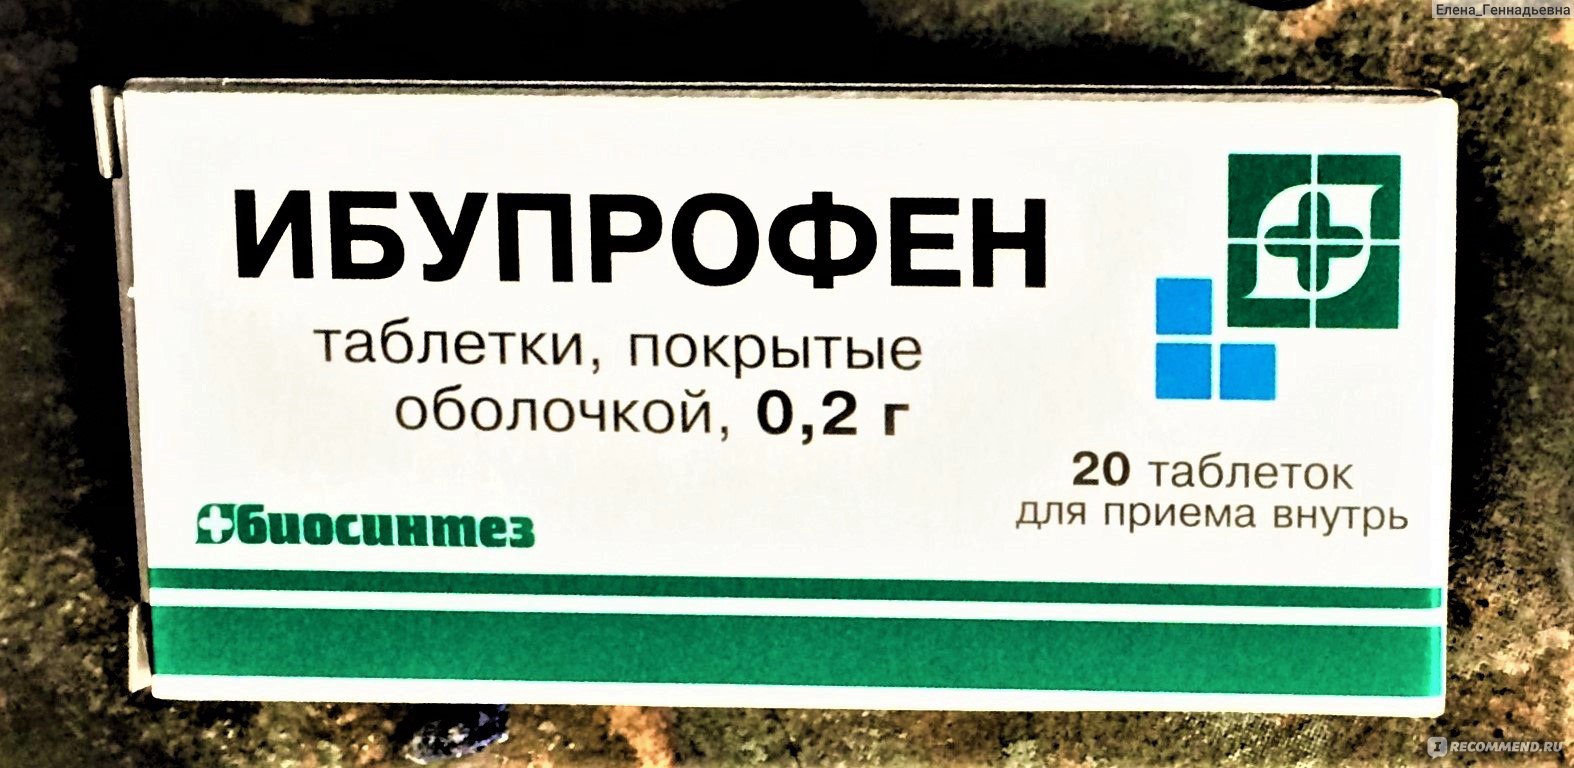 Ибупрофен По Аптекам Кострома